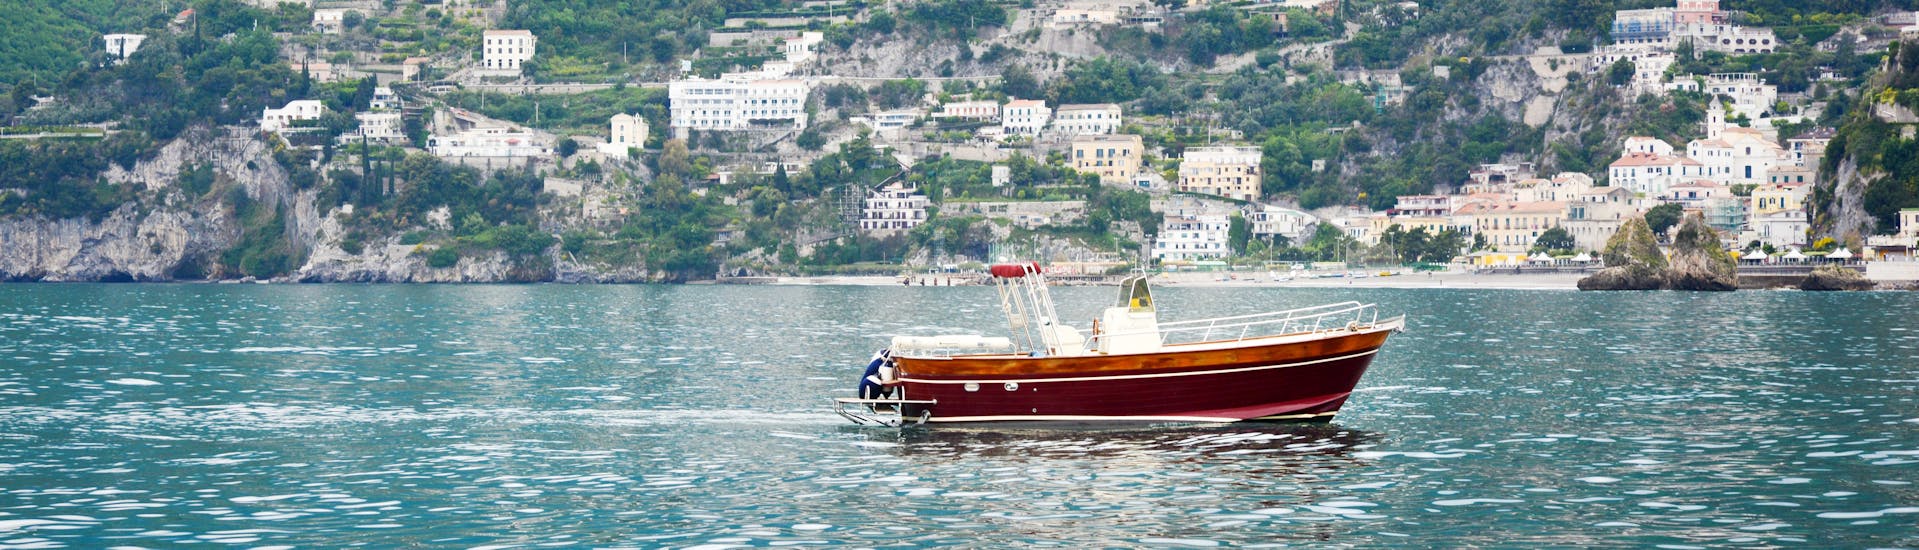 Le bateau de Blu Mediterraneo Amalfi Coast pendant la Balade en bateau de Salerne à l'île de Capri.